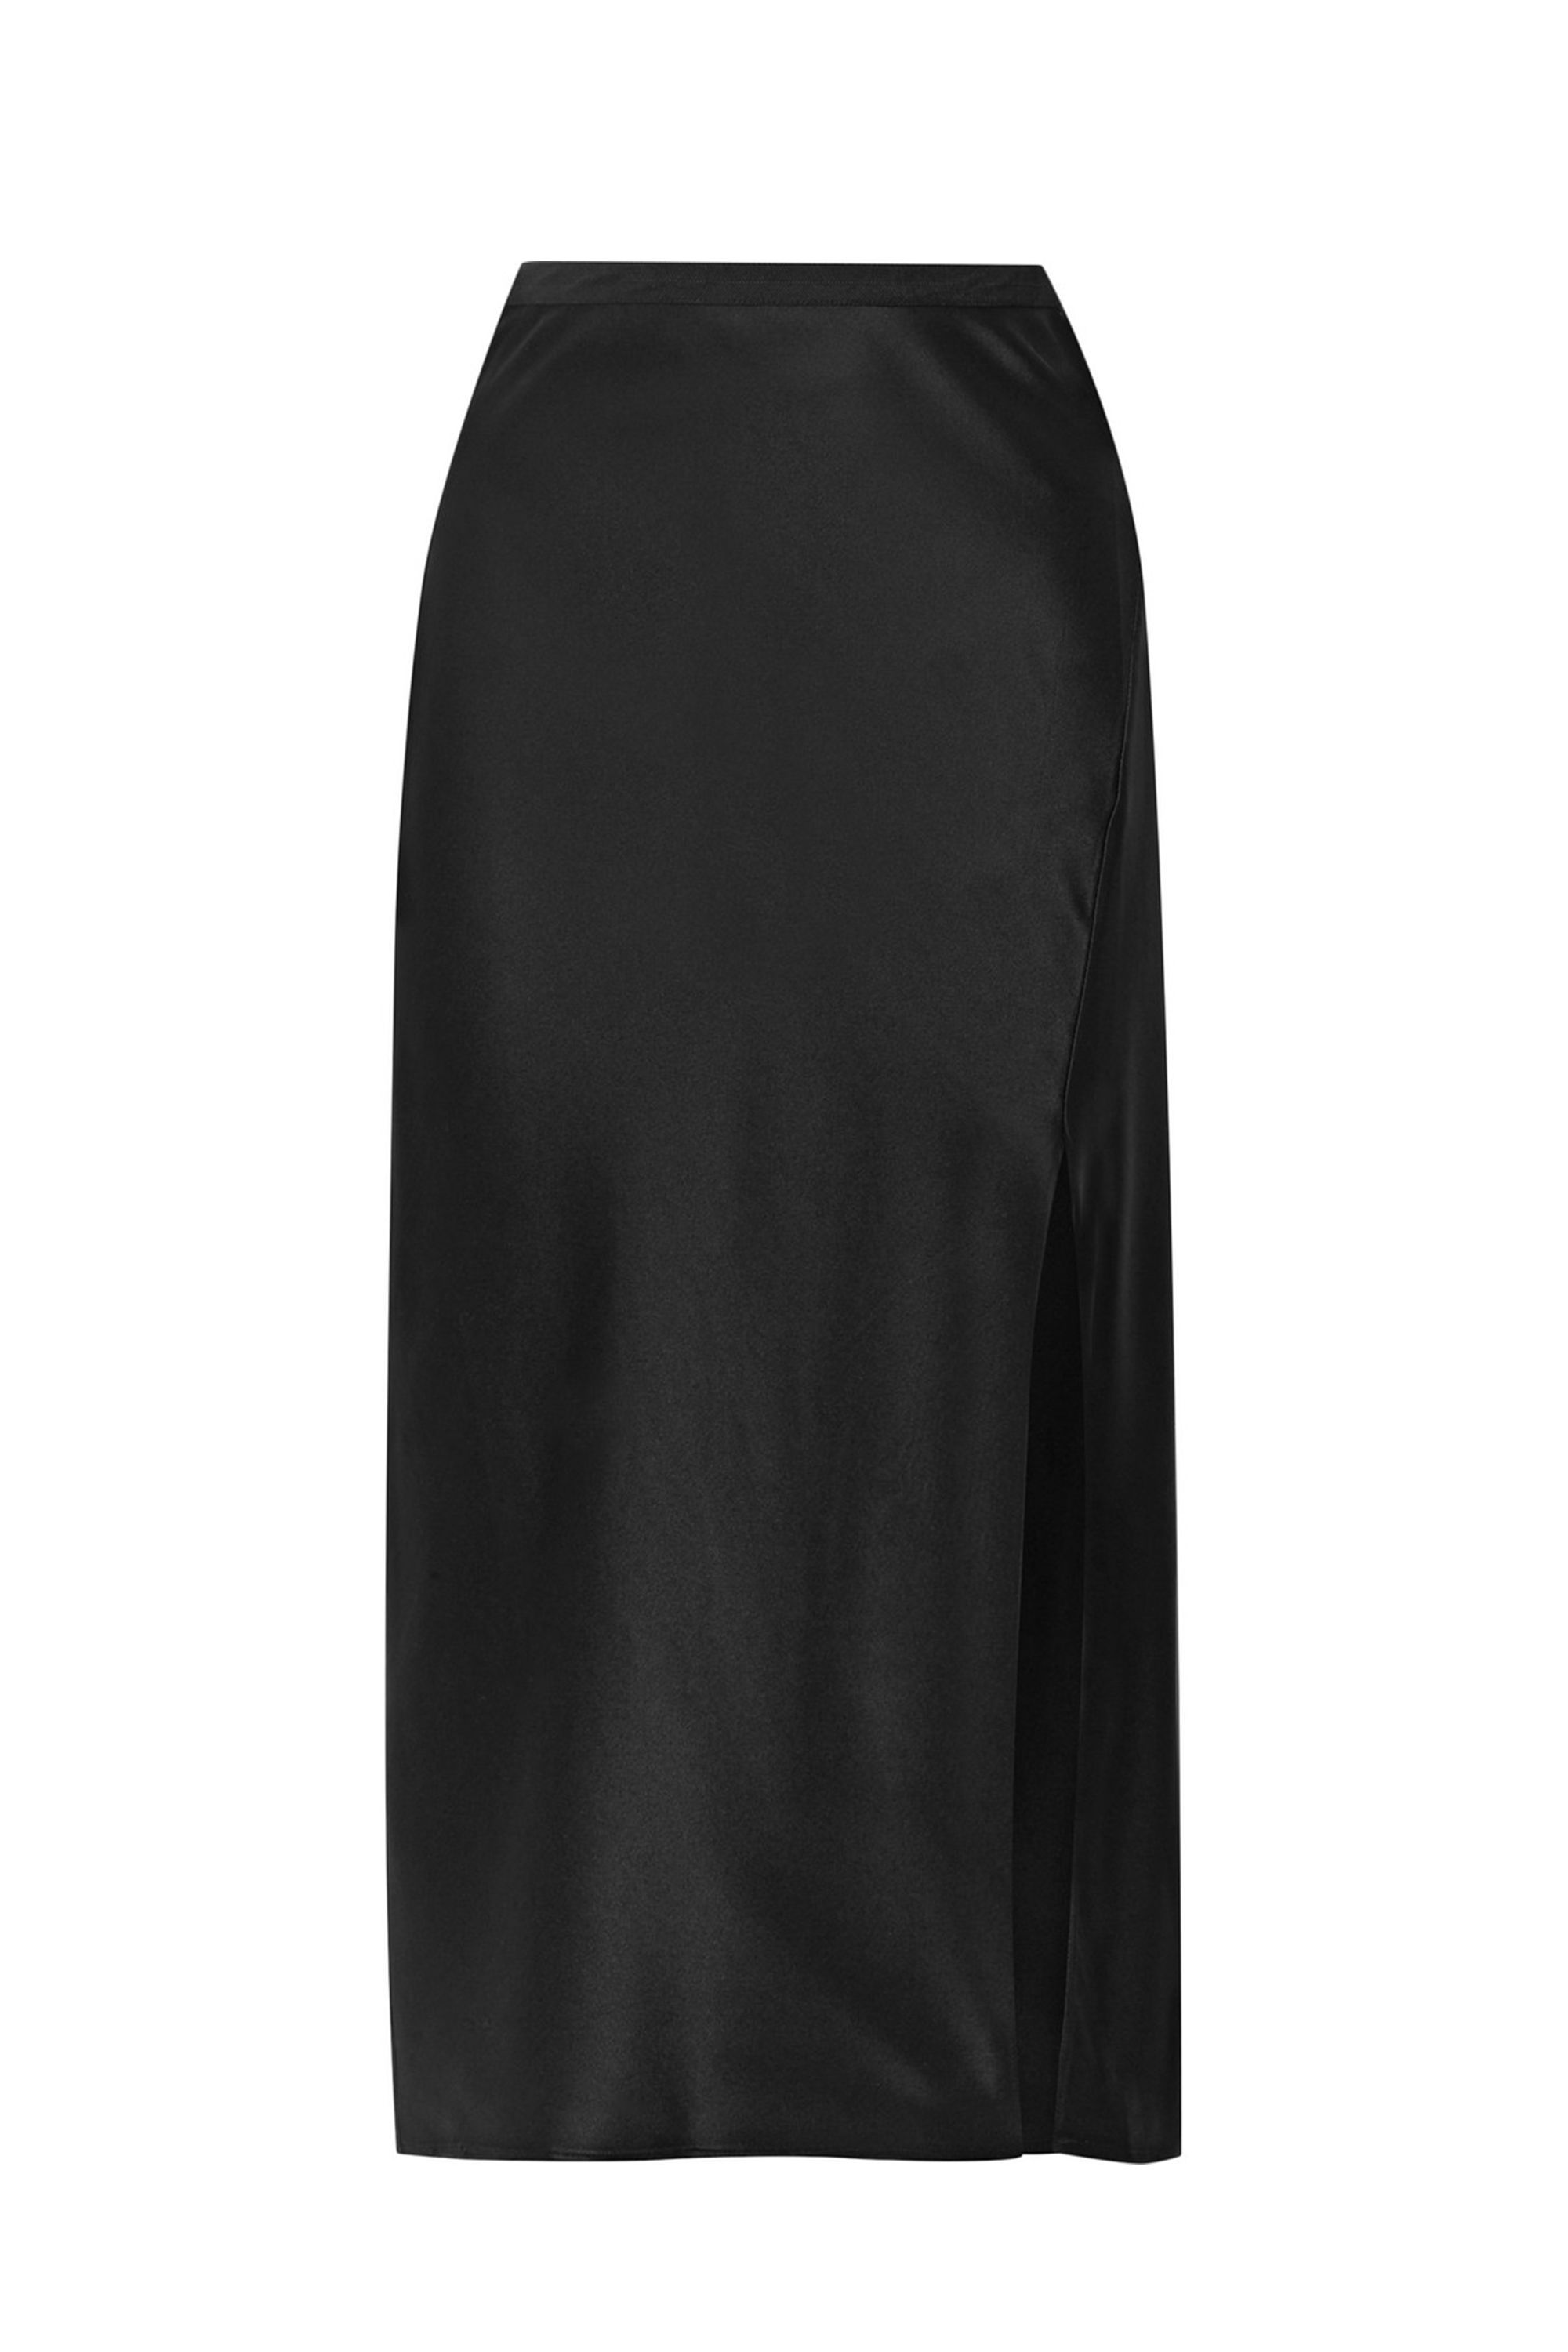 silk slip skirt black